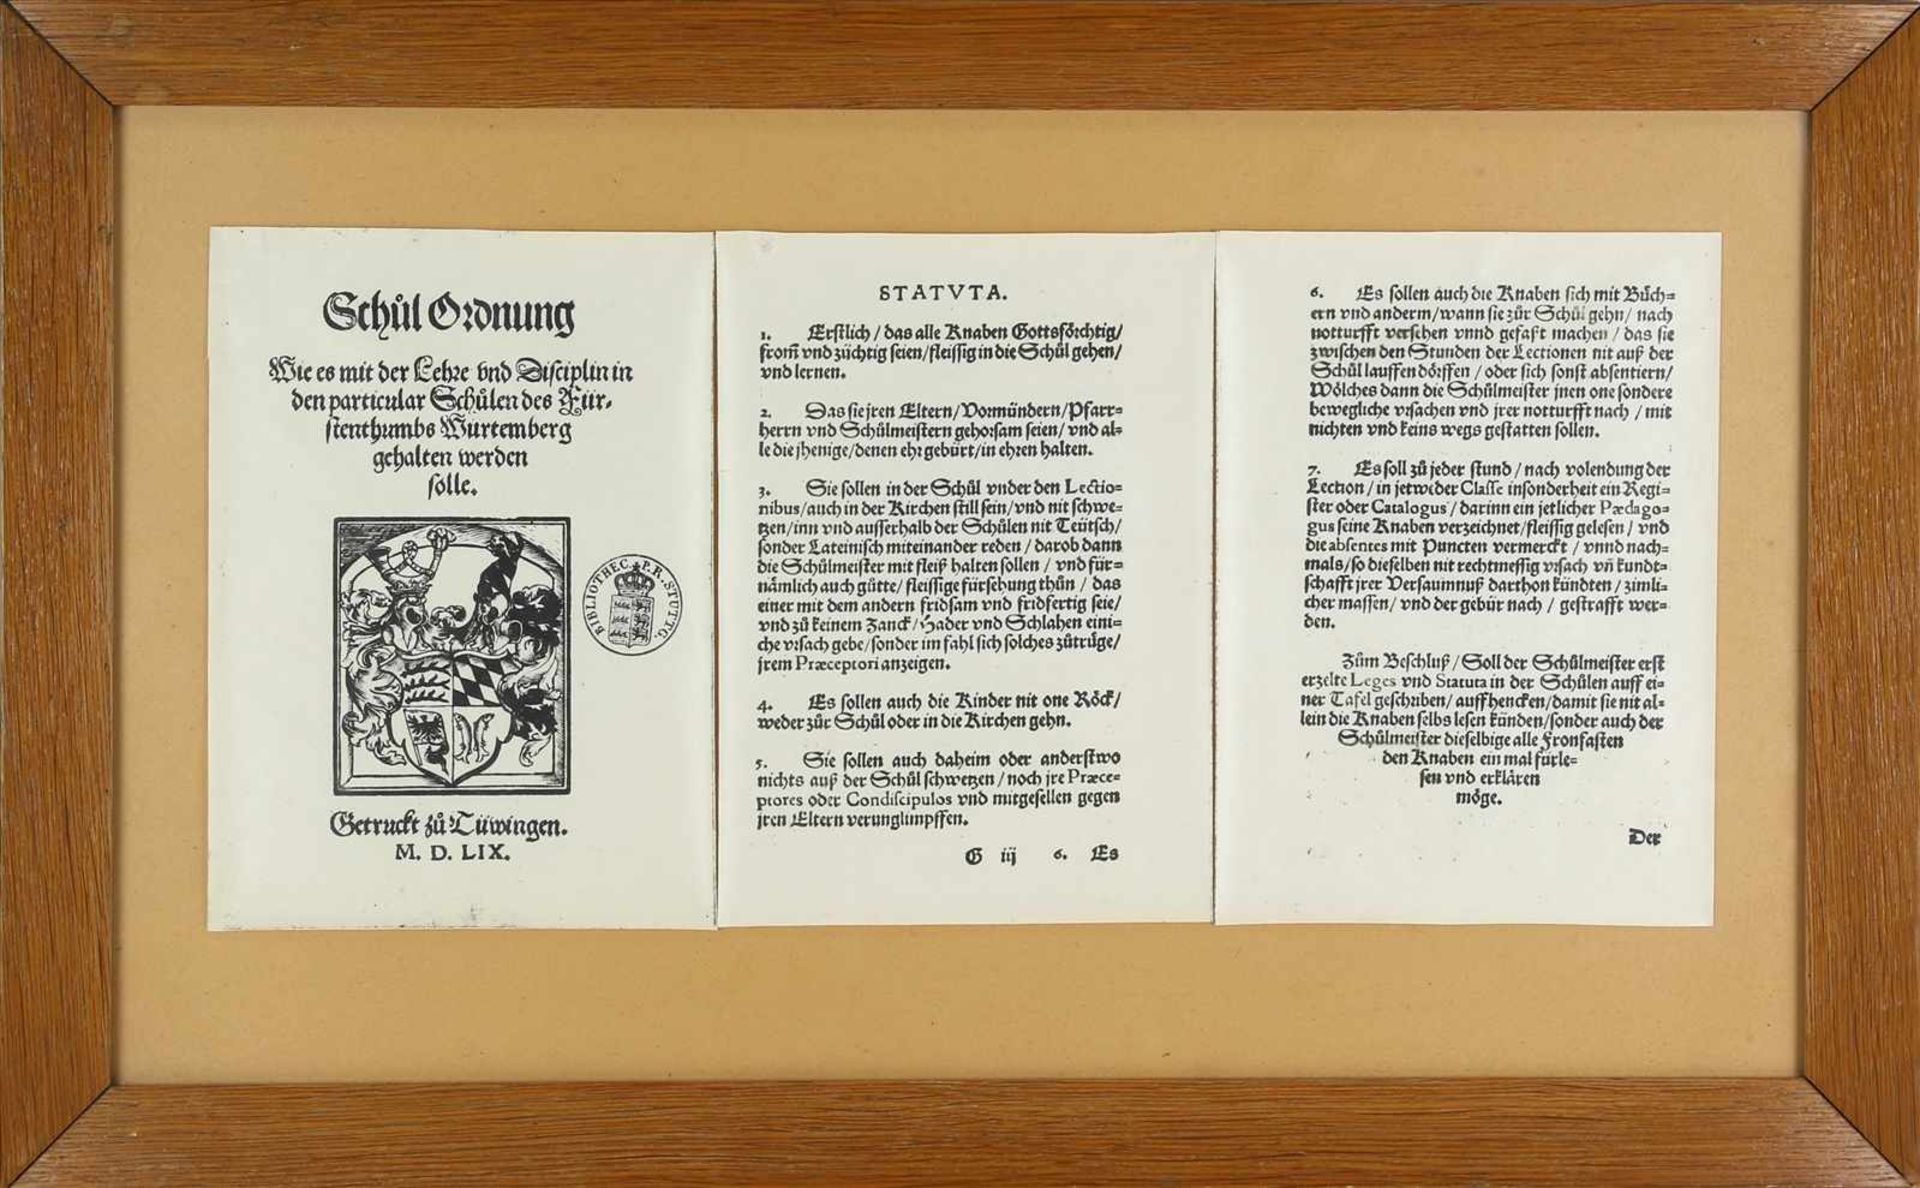 Schulordnungfür Württemberg 1559. Drei Faksimileseiten hinter Glas gerahmt. Rahmengröße ca. 23 x